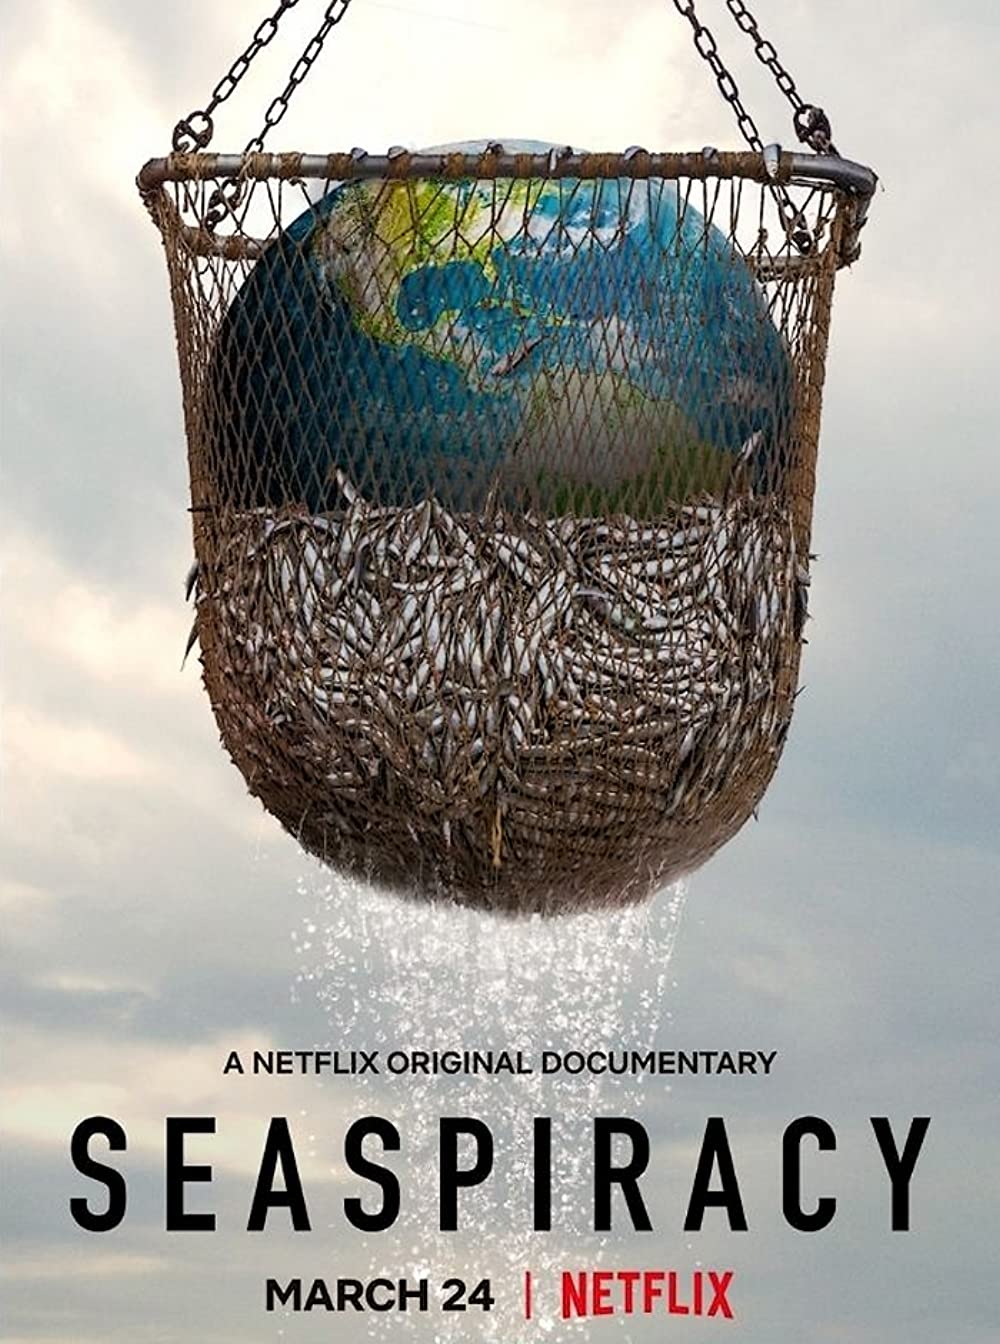 ดูหนังใหม่ Netflix SEASPIRACY 2021 ใครทำร้ายทะเล doomovie-hd